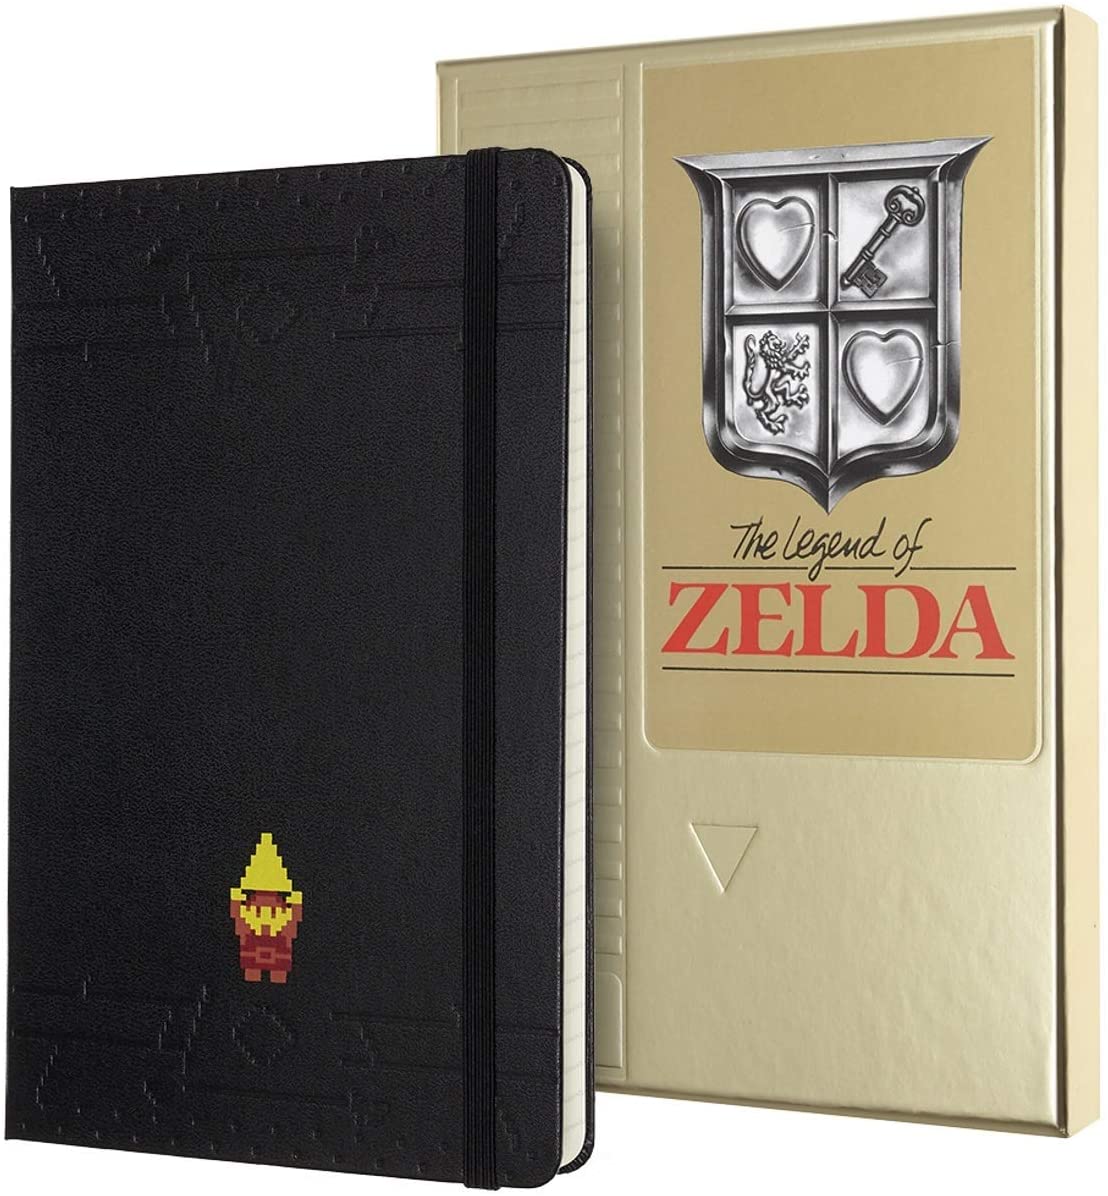 Carnet - Moleskine The Legend of Zelda Limited Edition - Ruled Notebook | Moleskine